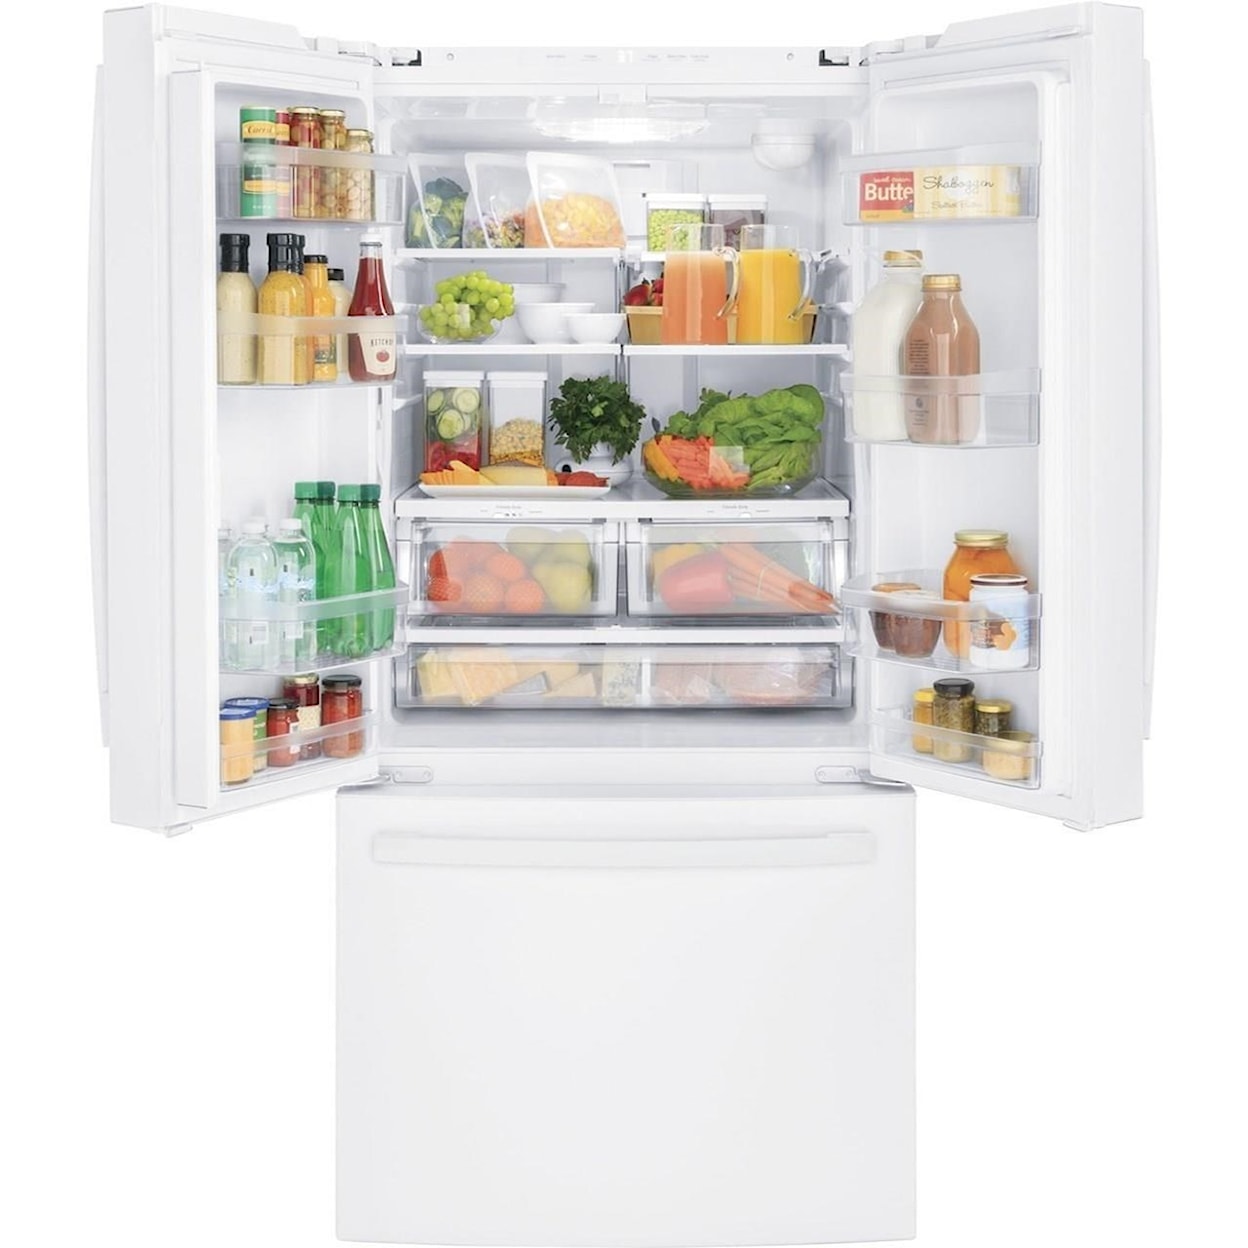 GE Appliances GE French Door Refrigerators GE® ENERGY STAR® 27.0 Cu. Ft. French-Door Re